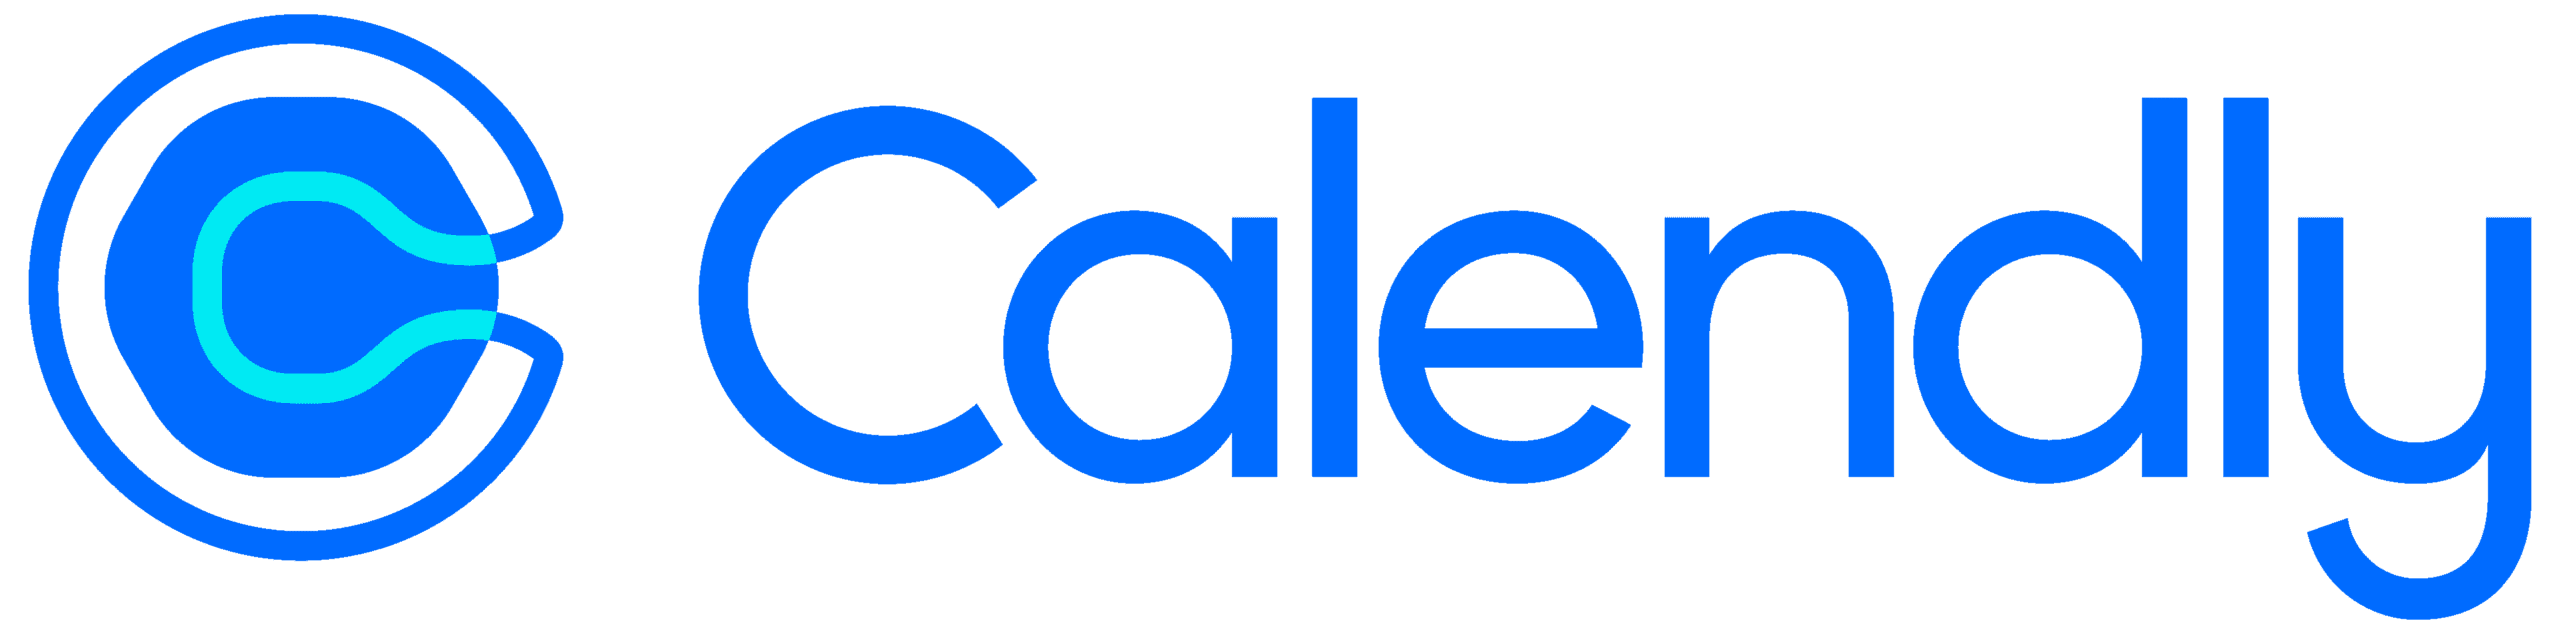 Calendly-Logo